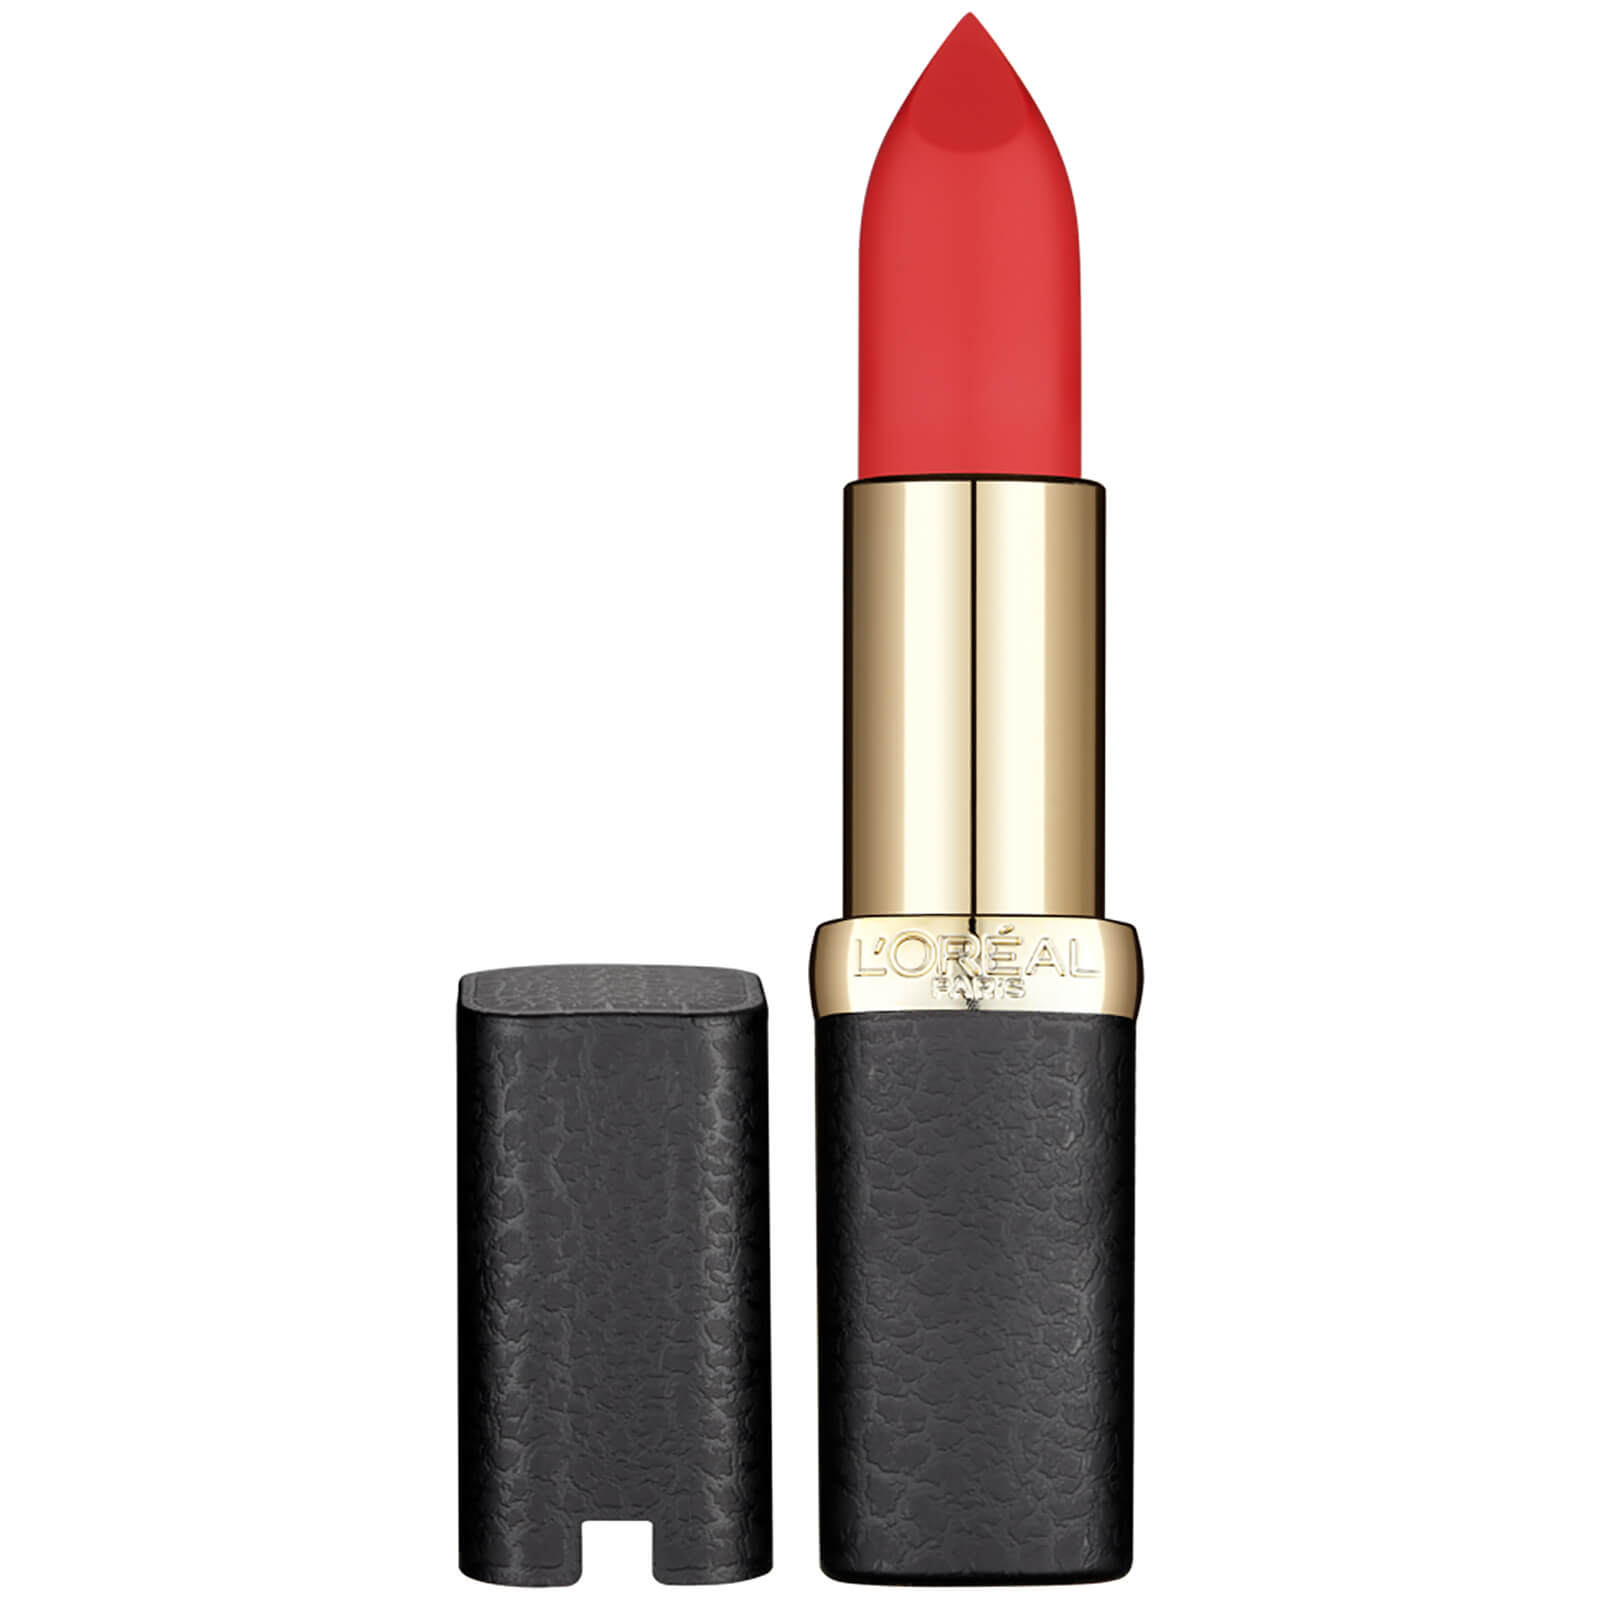 L'Oréal Paris Color Riche Matte Addiction Lipstick 4.8g (Various Shades) - 5 346 Red Perfecto